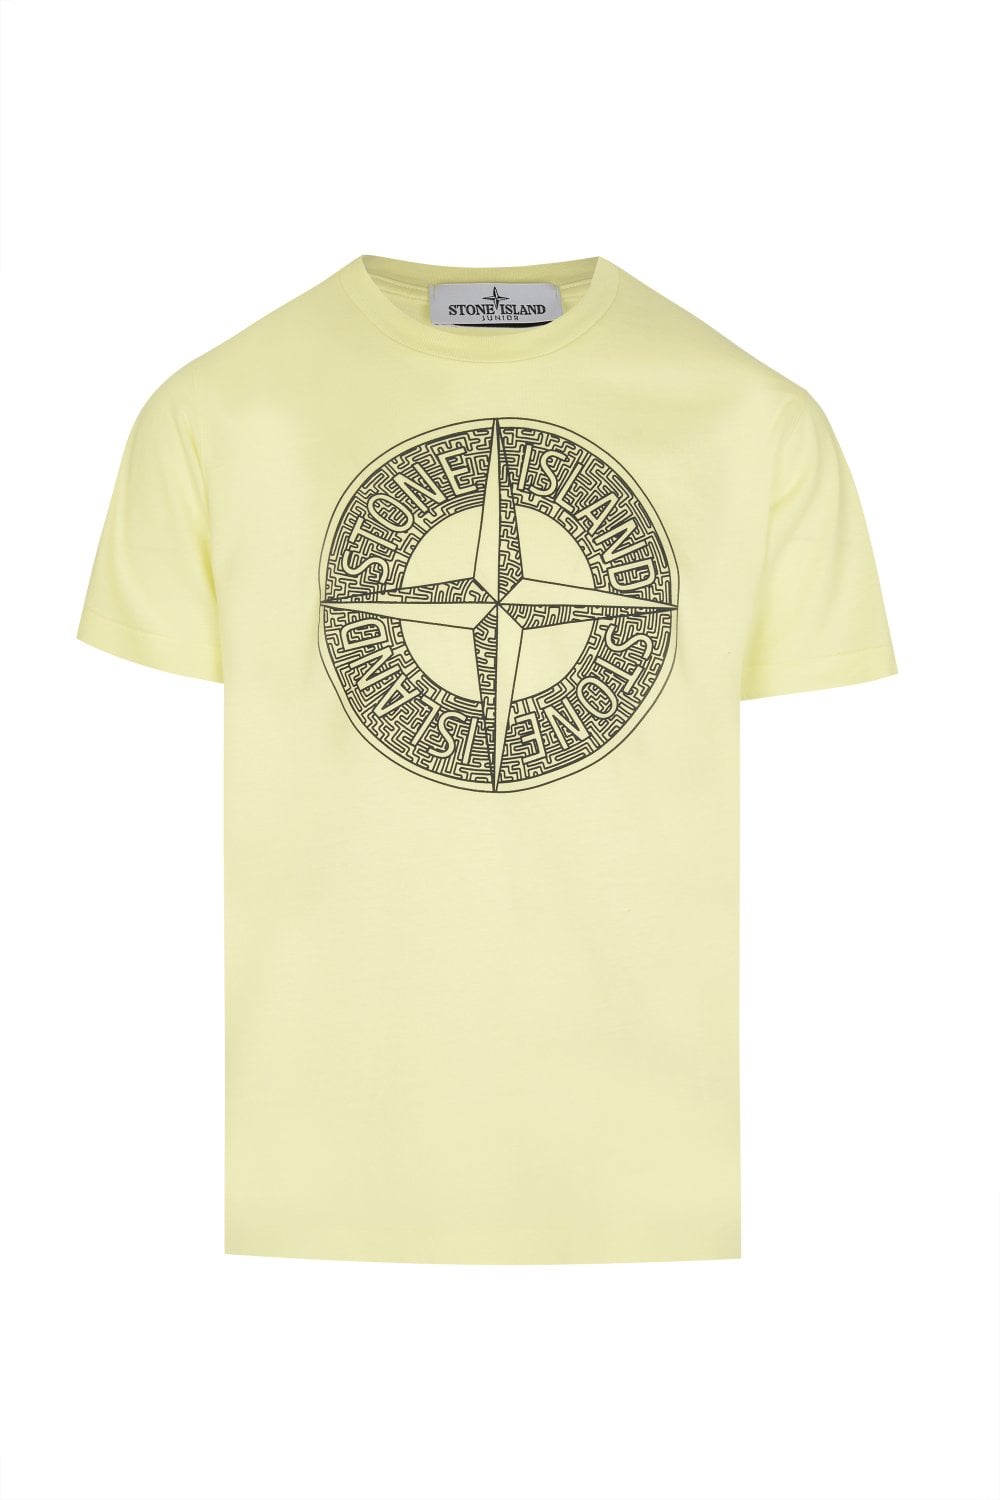 Stone Island Boys Logo T Shirt Lemon